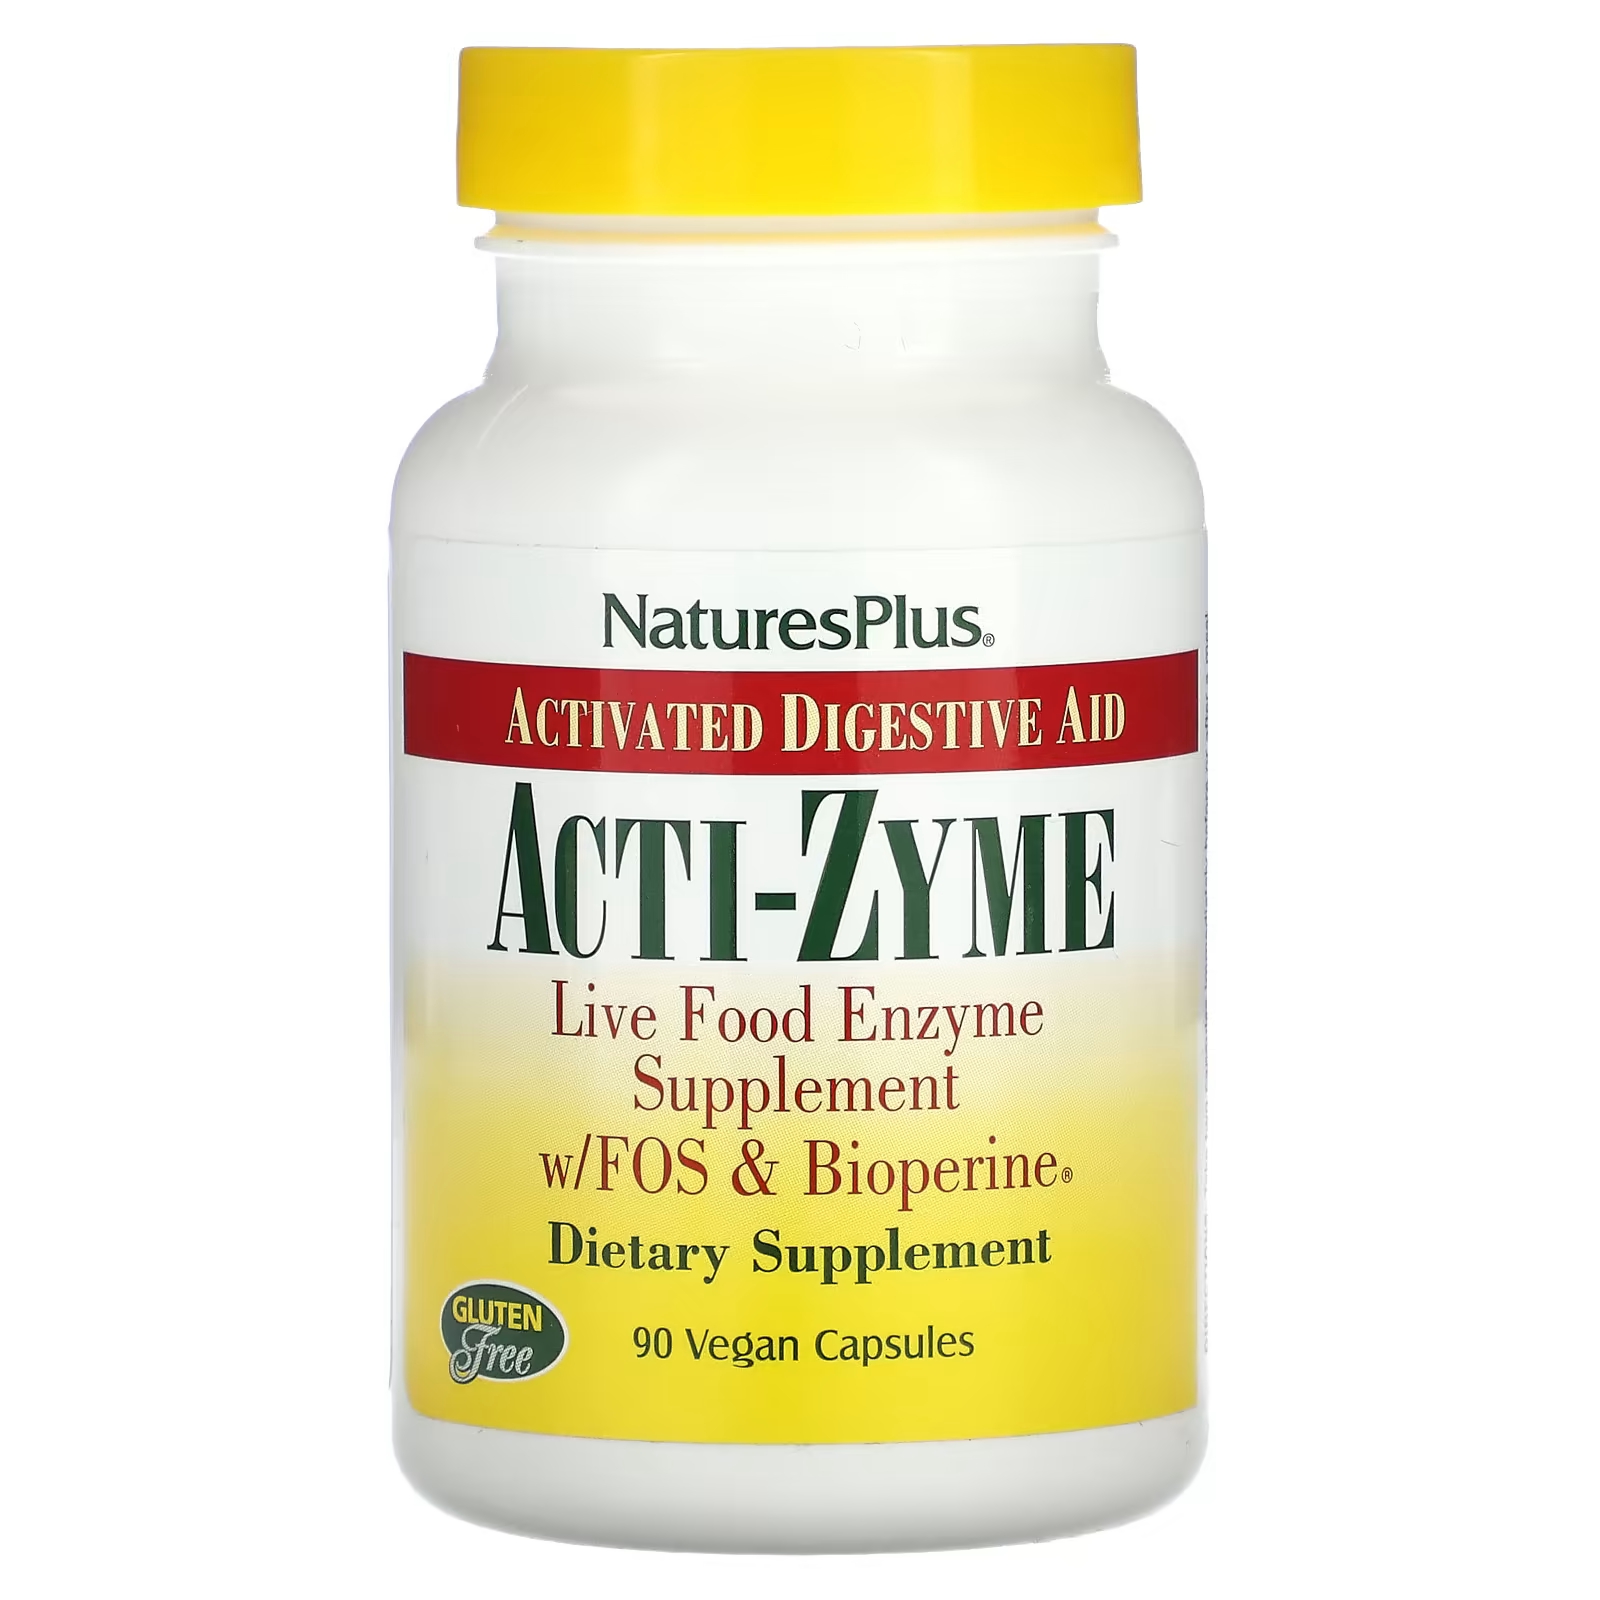 Пищевая добавка NaturesPlus Acti-Zyme активированная помощь пищеварению, 90 веганских капсул